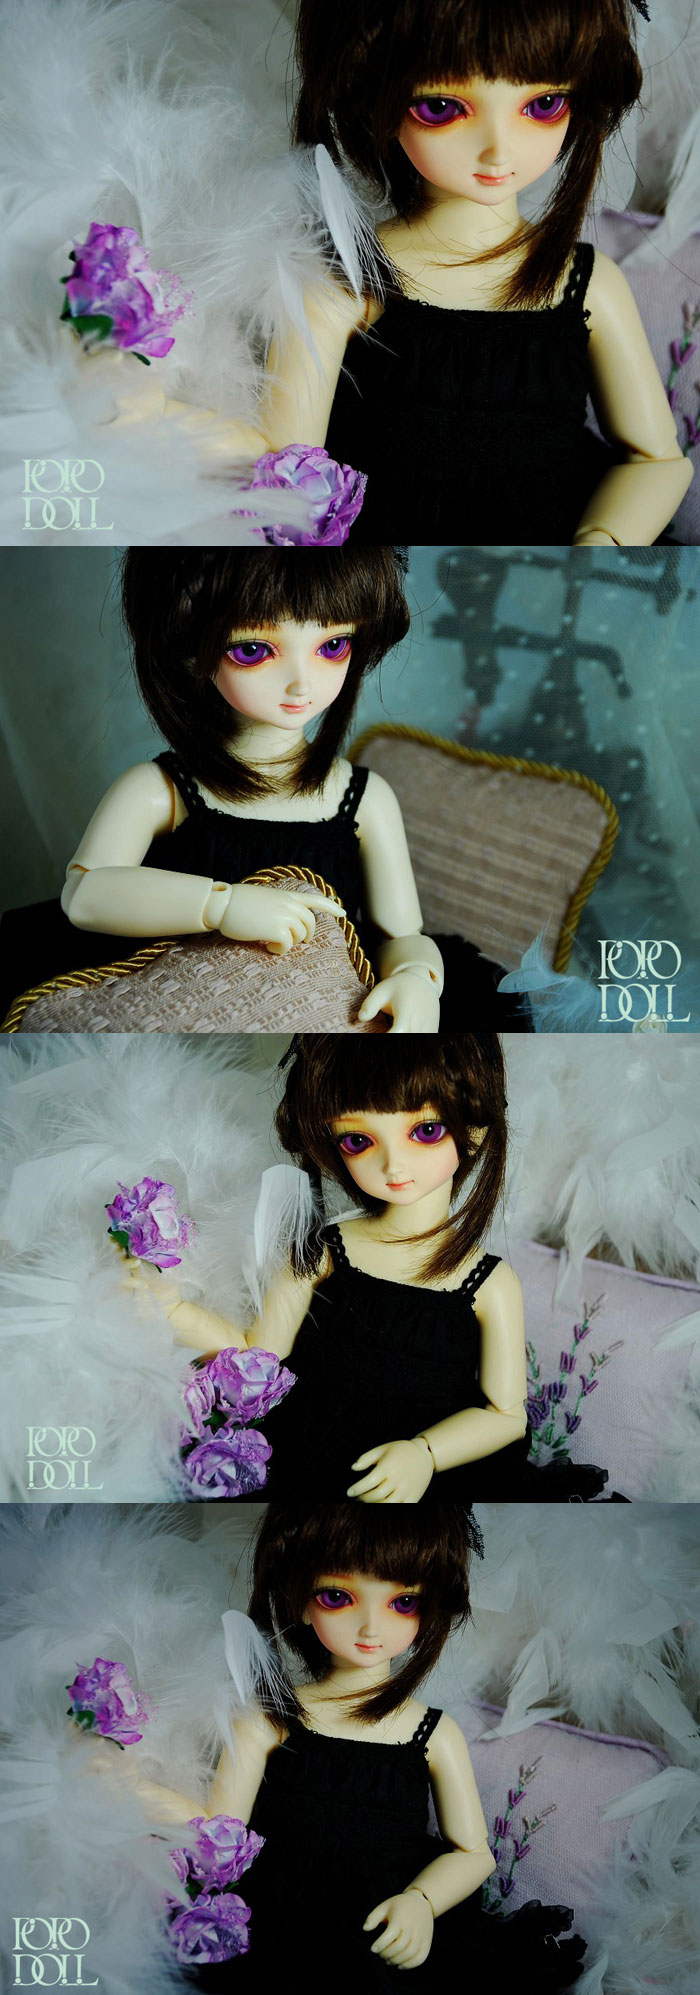 BJD Xinxin Girl 30cm Boll-jointed doll